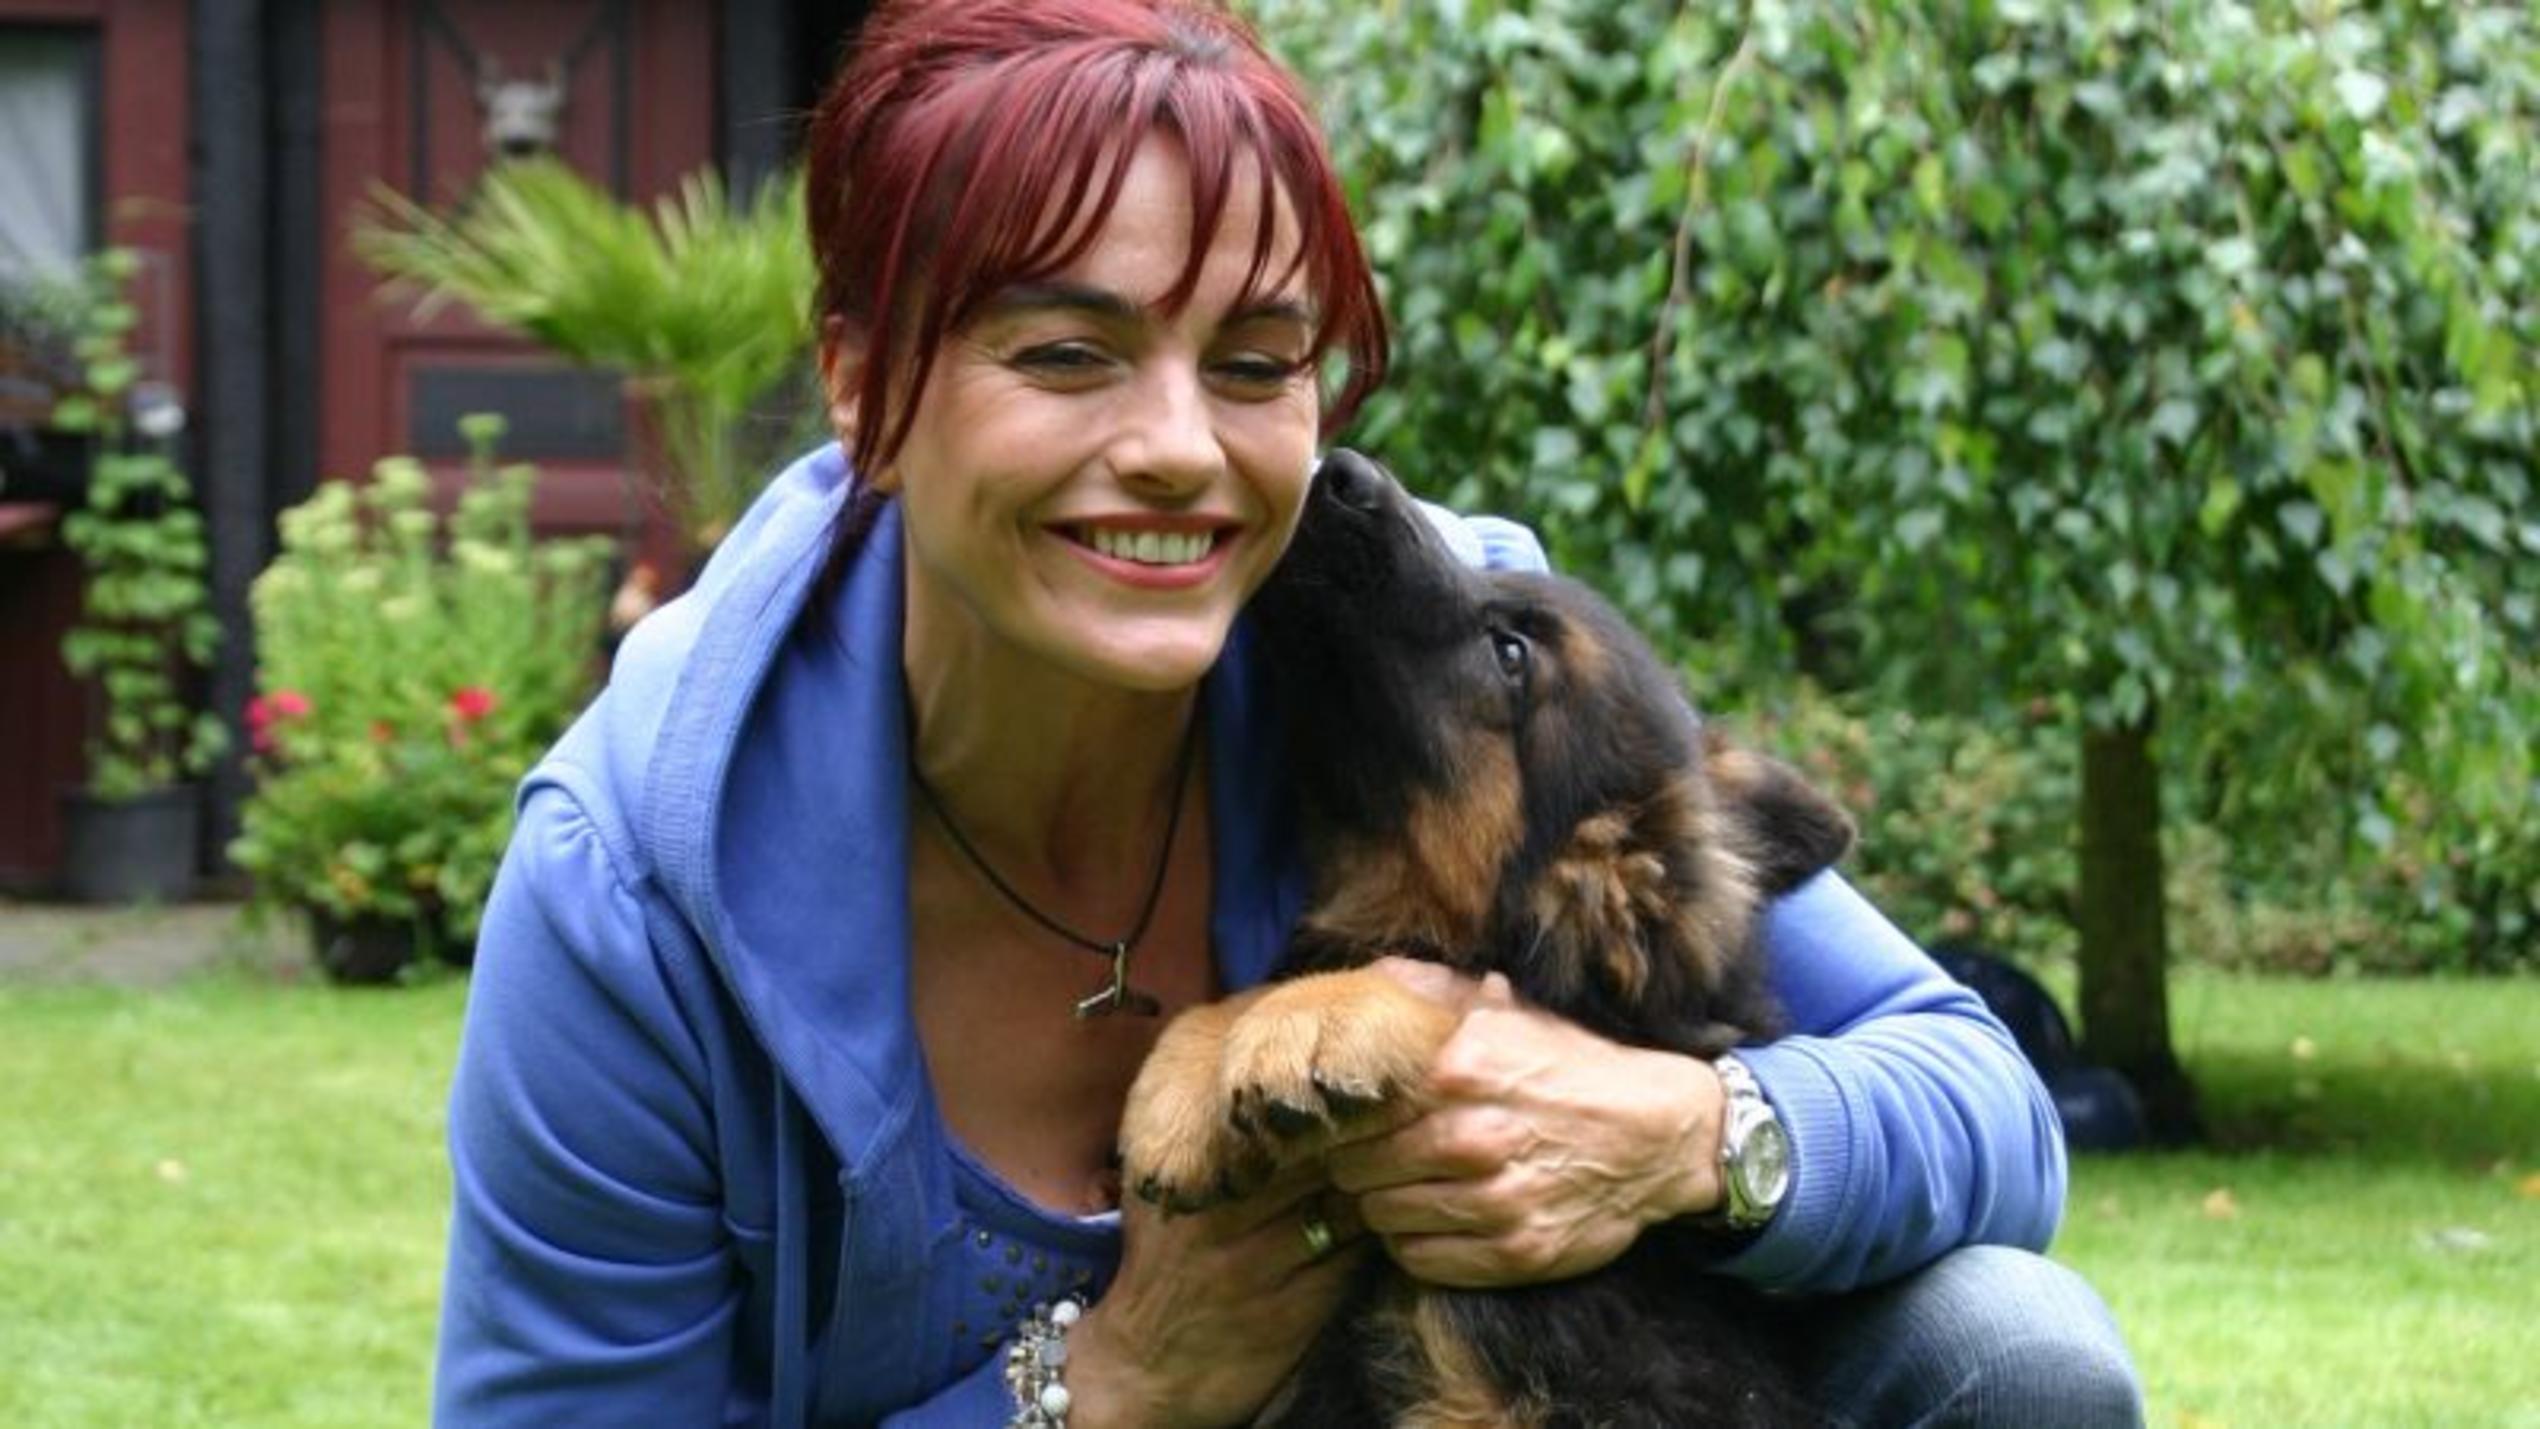 hundkatzemaus-Reporterin Diana Eichhorn mit einem jungen Schäferhund. Foto: VOX/DOCMA TV/Dr. Gerald Krakauer